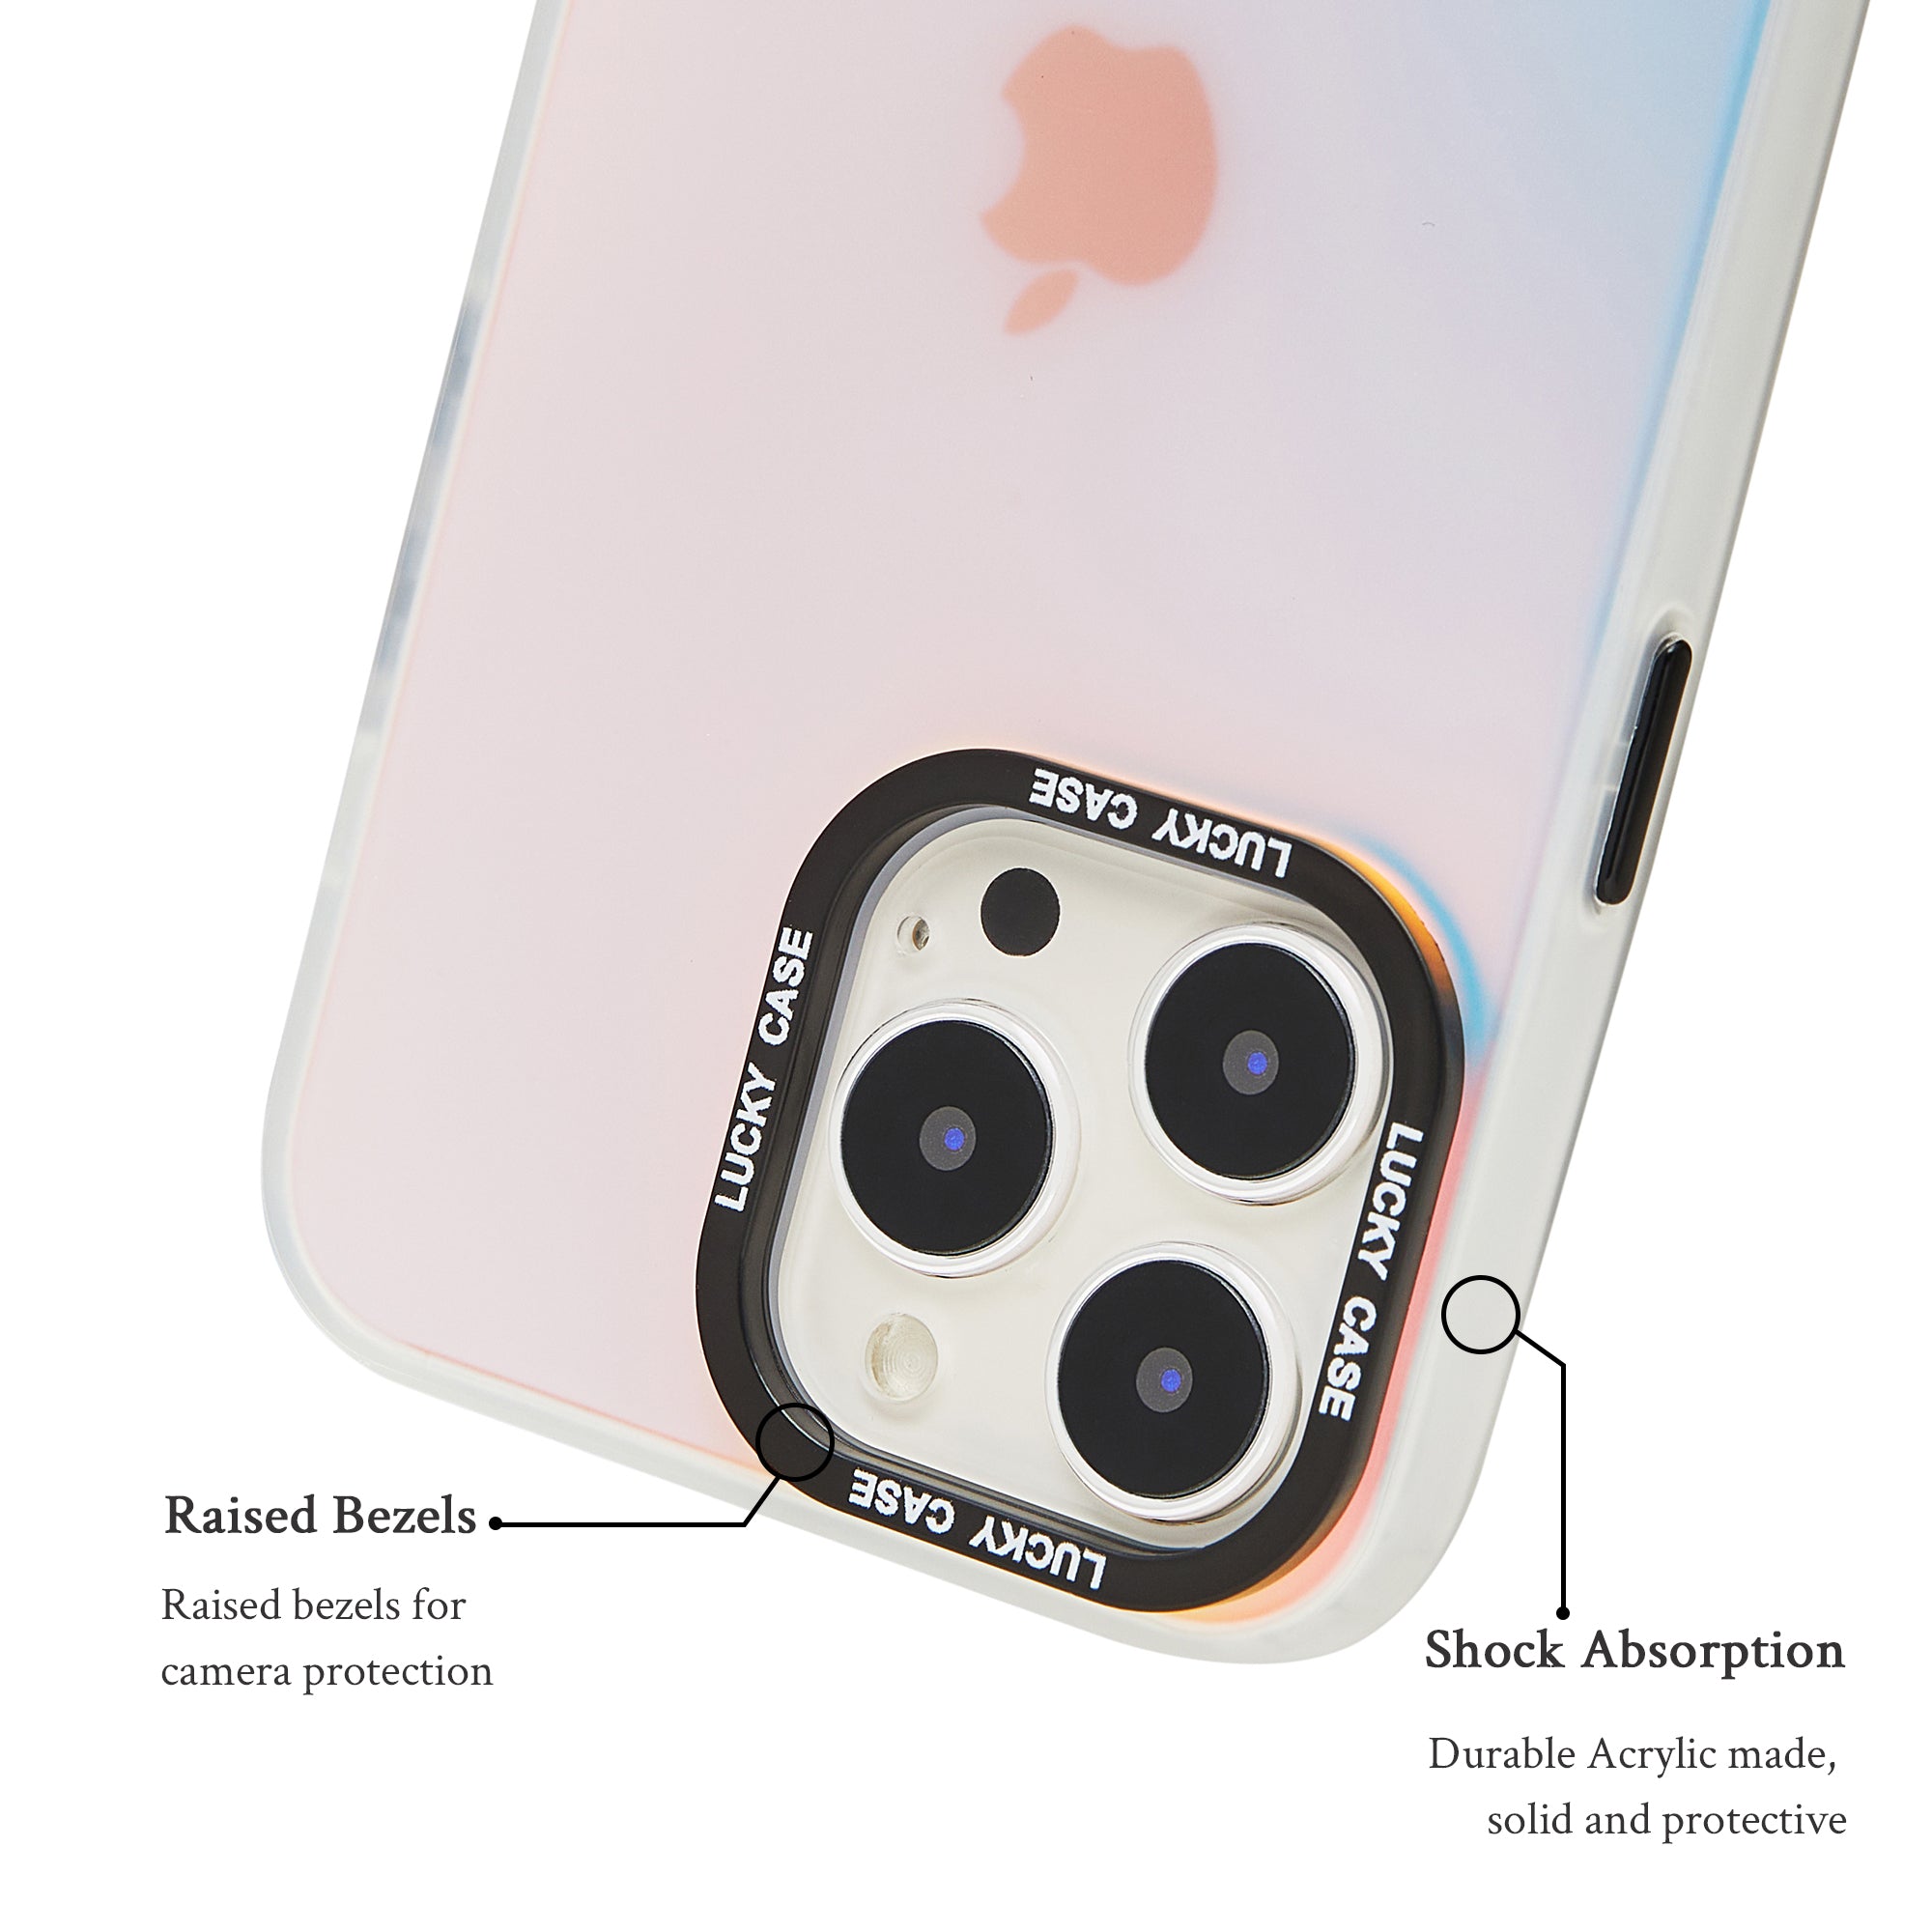 Laser-Etched Transparent Phone Case